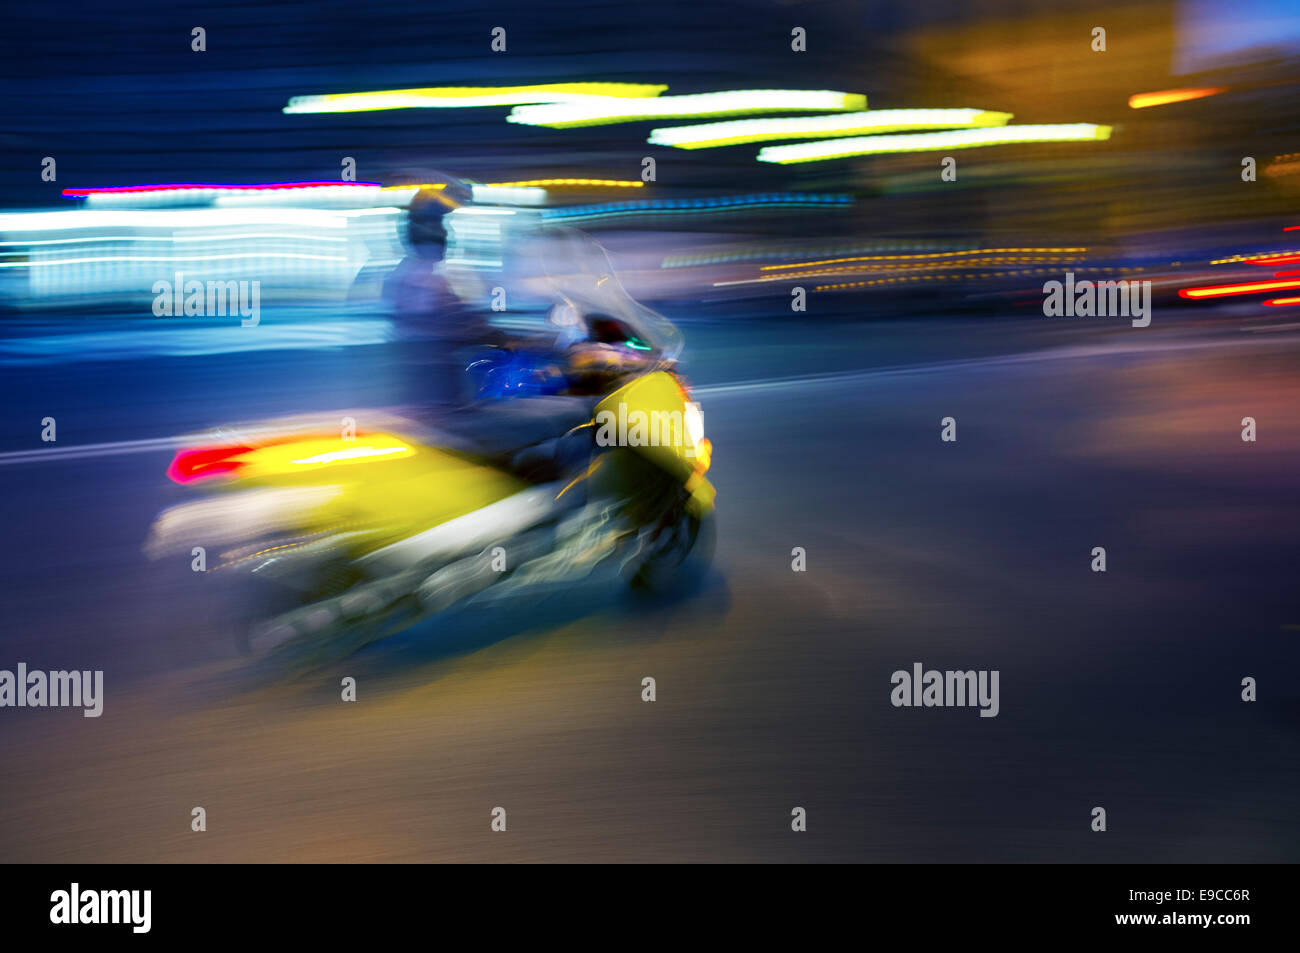 Abstract image floue d'un scooter de la conduite de nuit. Banque D'Images